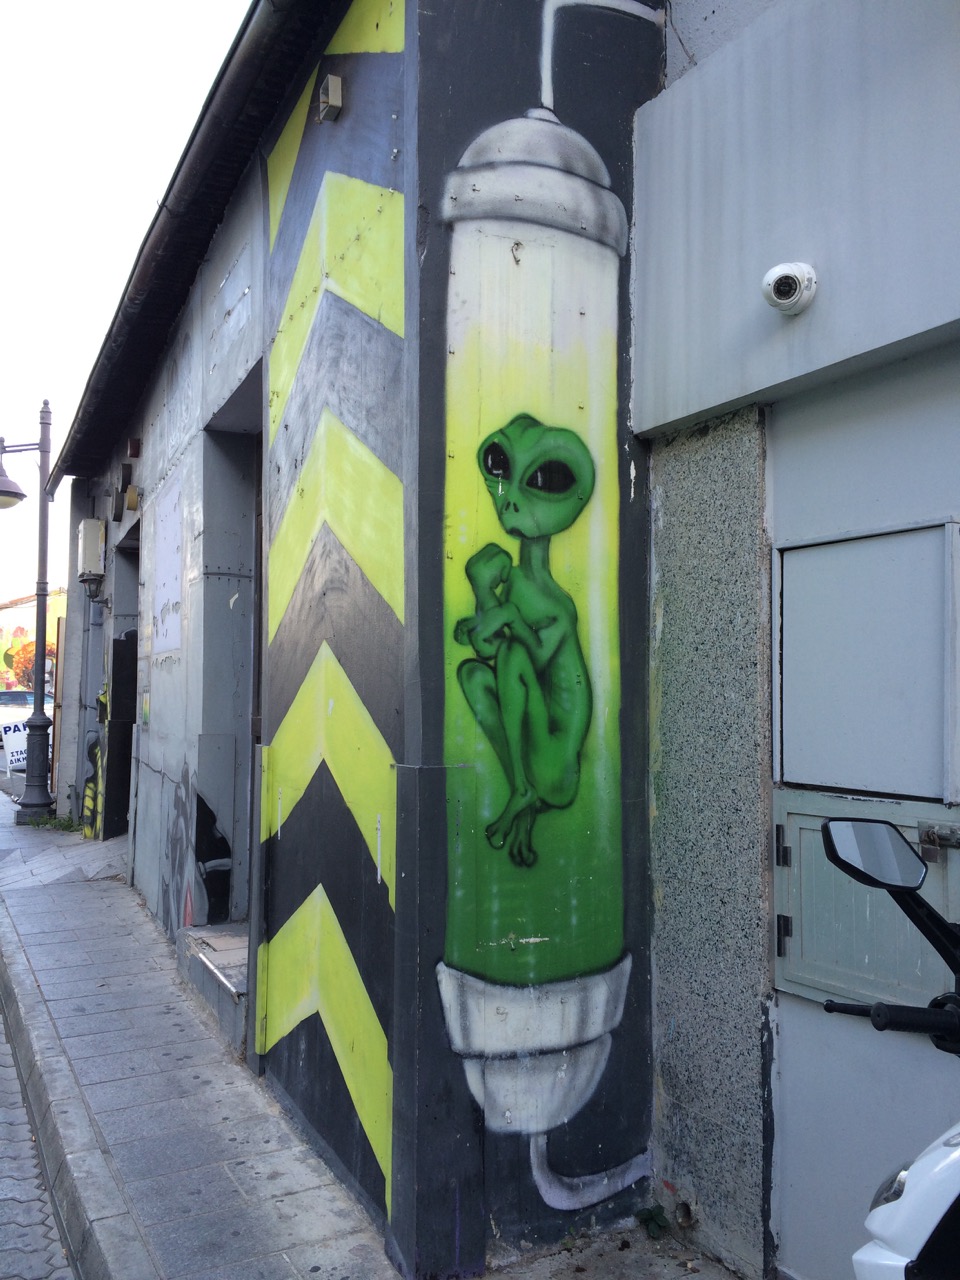 Street art in Cyprus